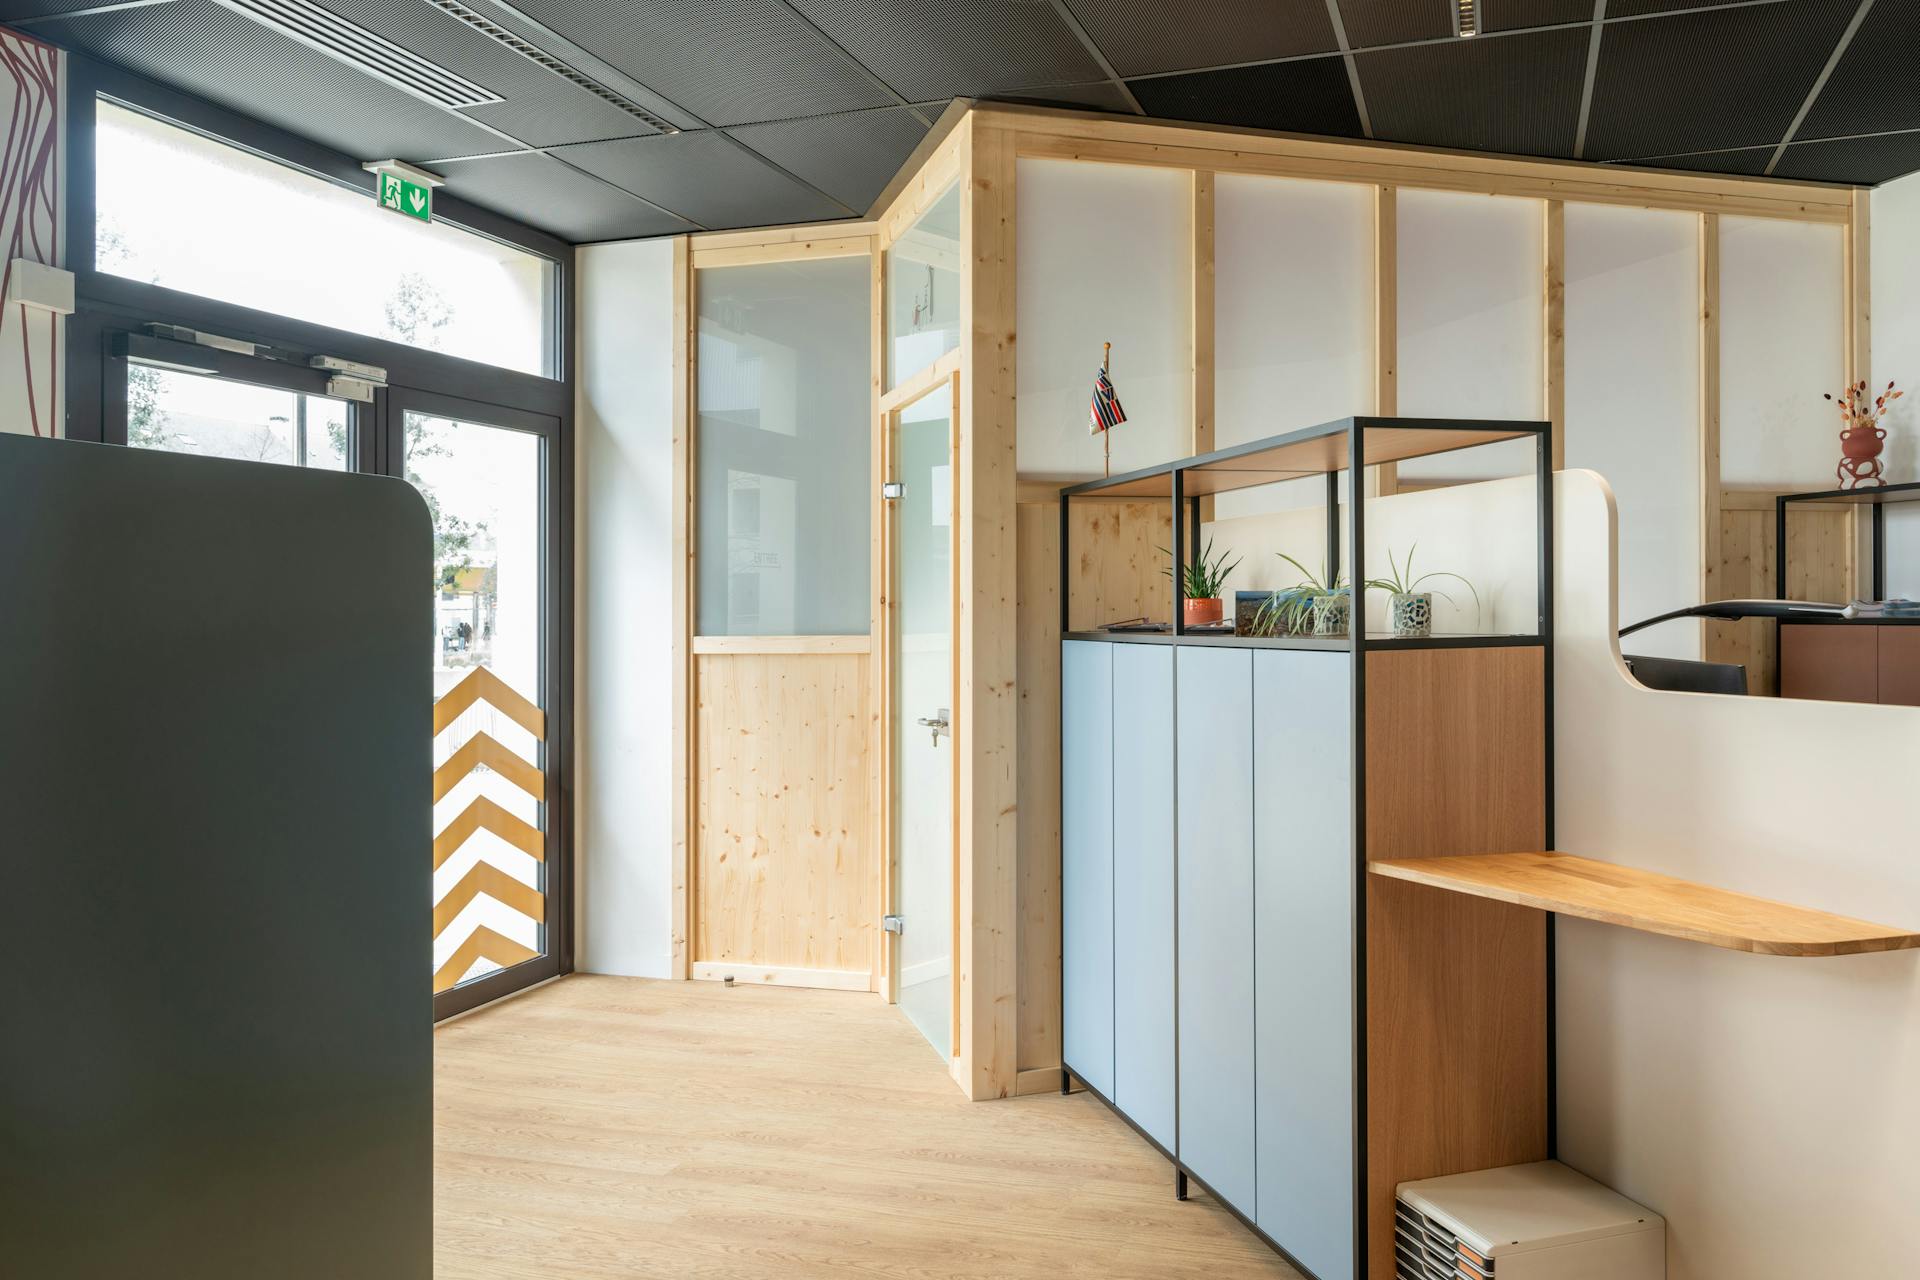 Une salle dé réunion isolée au sein de la CCI Saint-Nazaire, confectionnée par l'agence de design Studio Katra.